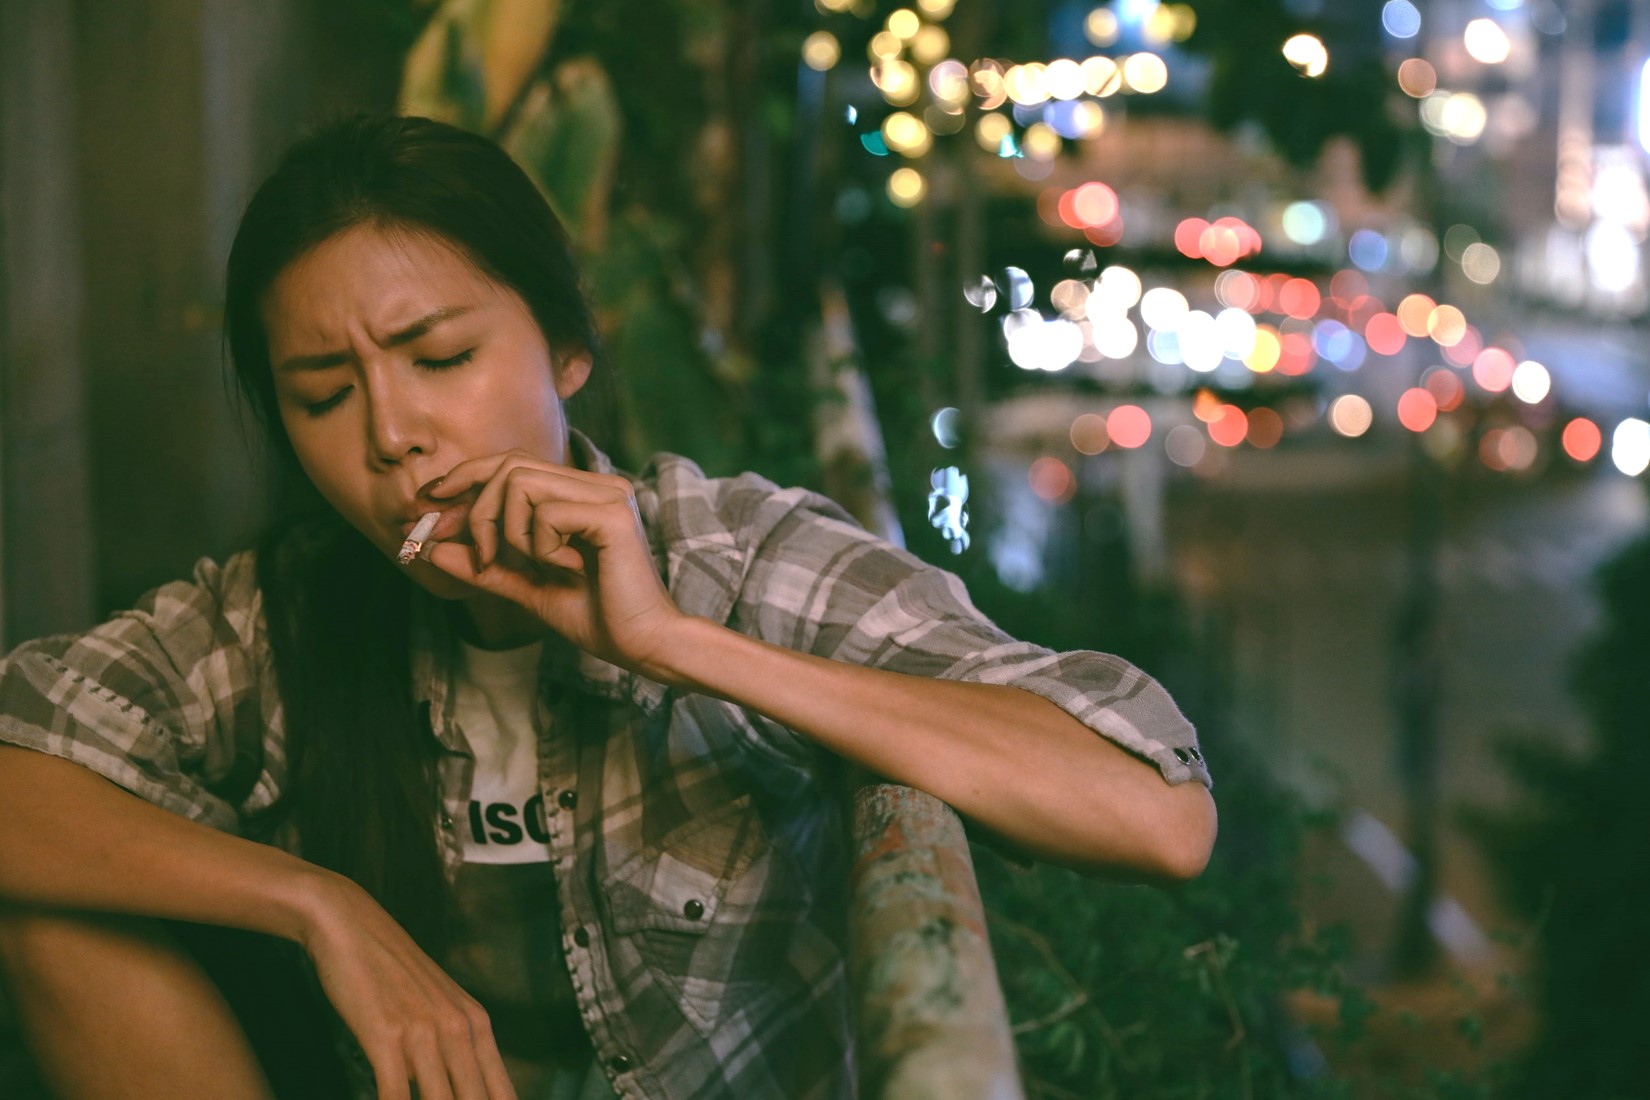 Siêu mẫu Minh Tú gây sốc với hình ảnh hoa hậu vô tư hút thuốc - 1